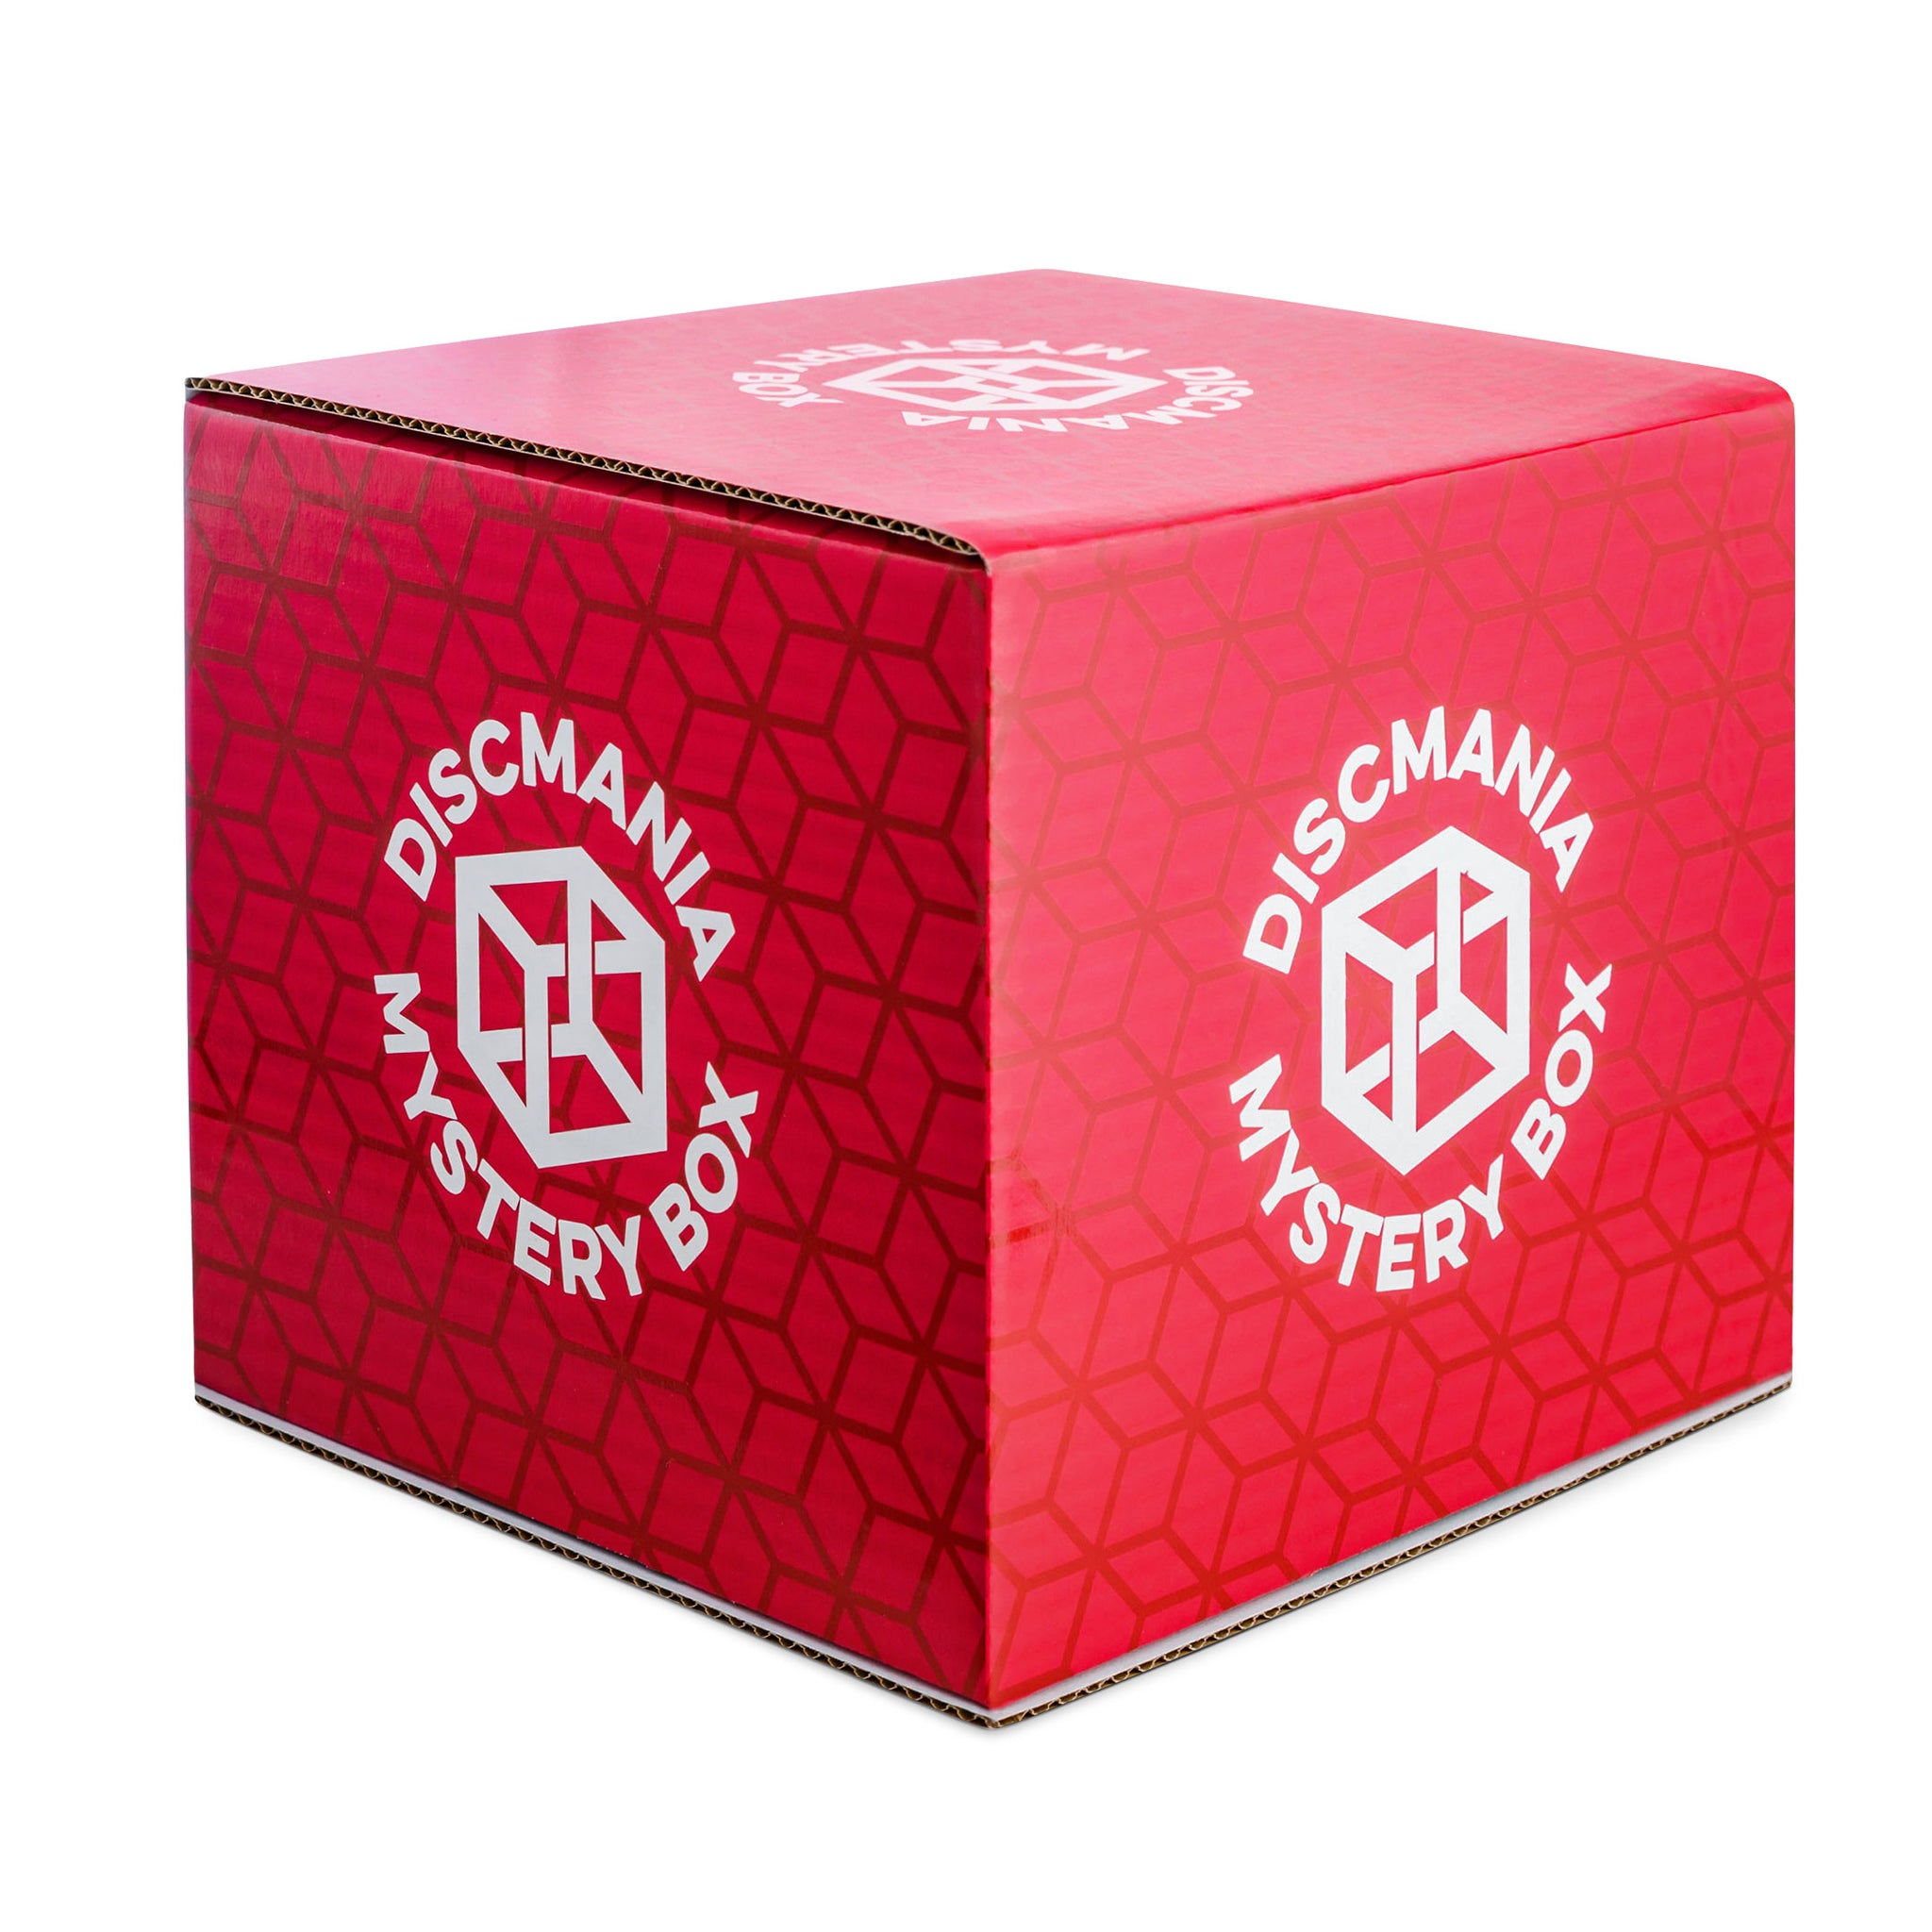 Discmania Mystery Box (Red Edition) – Discmania Store